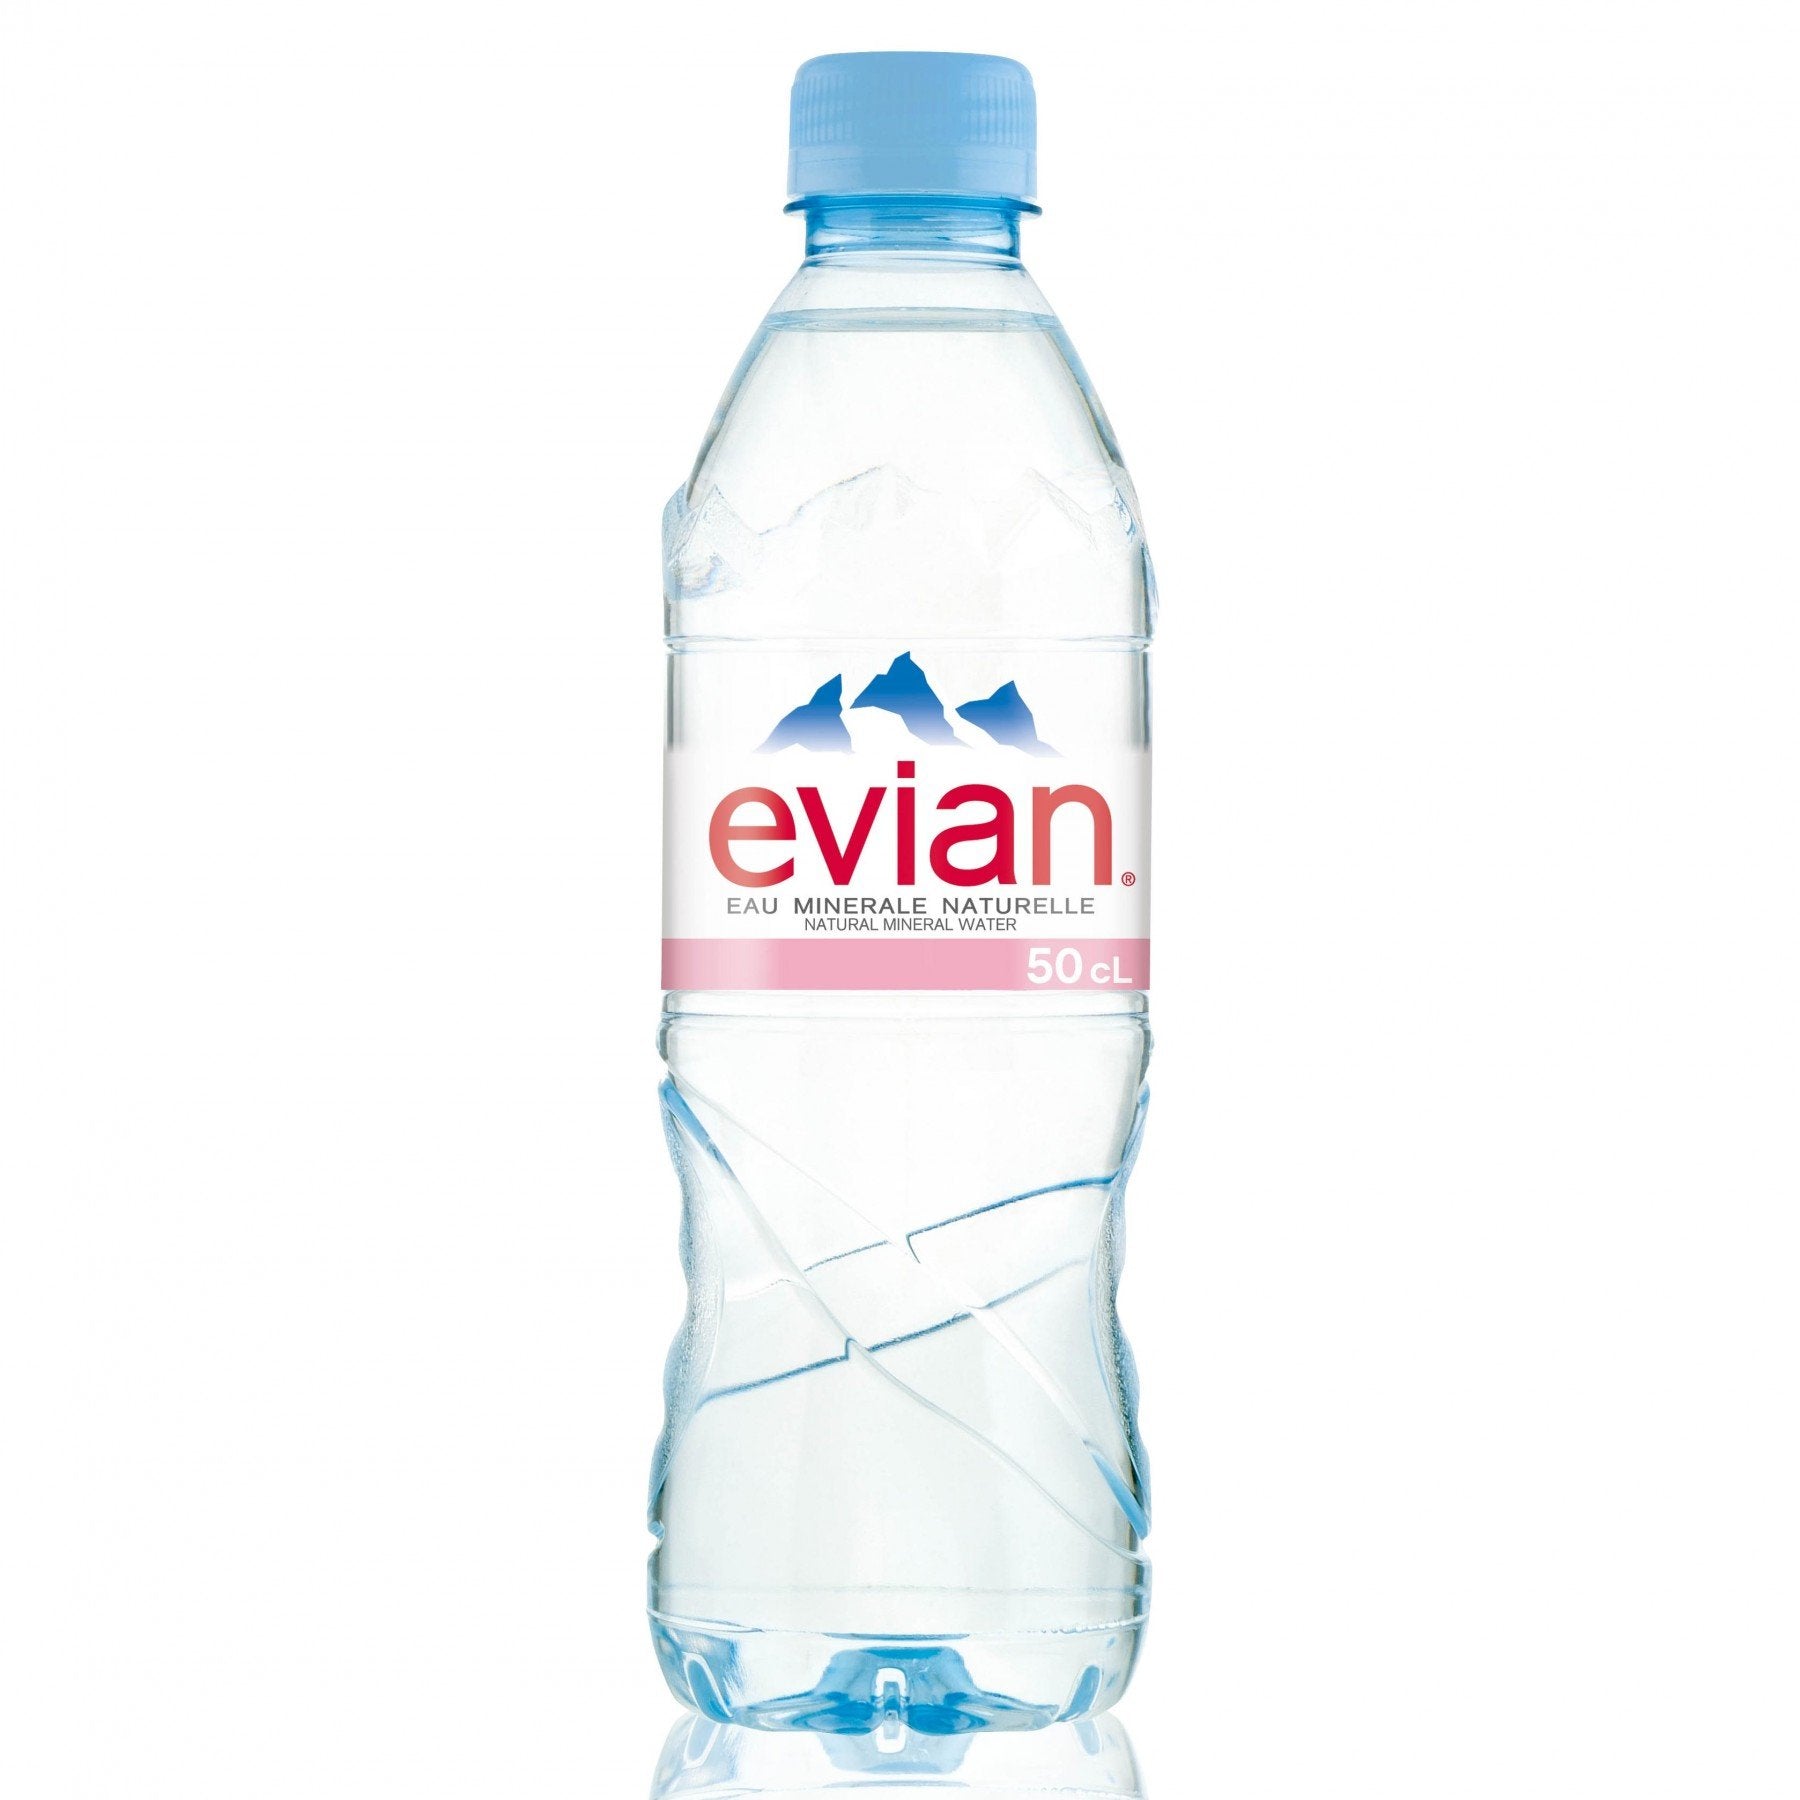 Evian water - 1.5l, 330ml,500ml